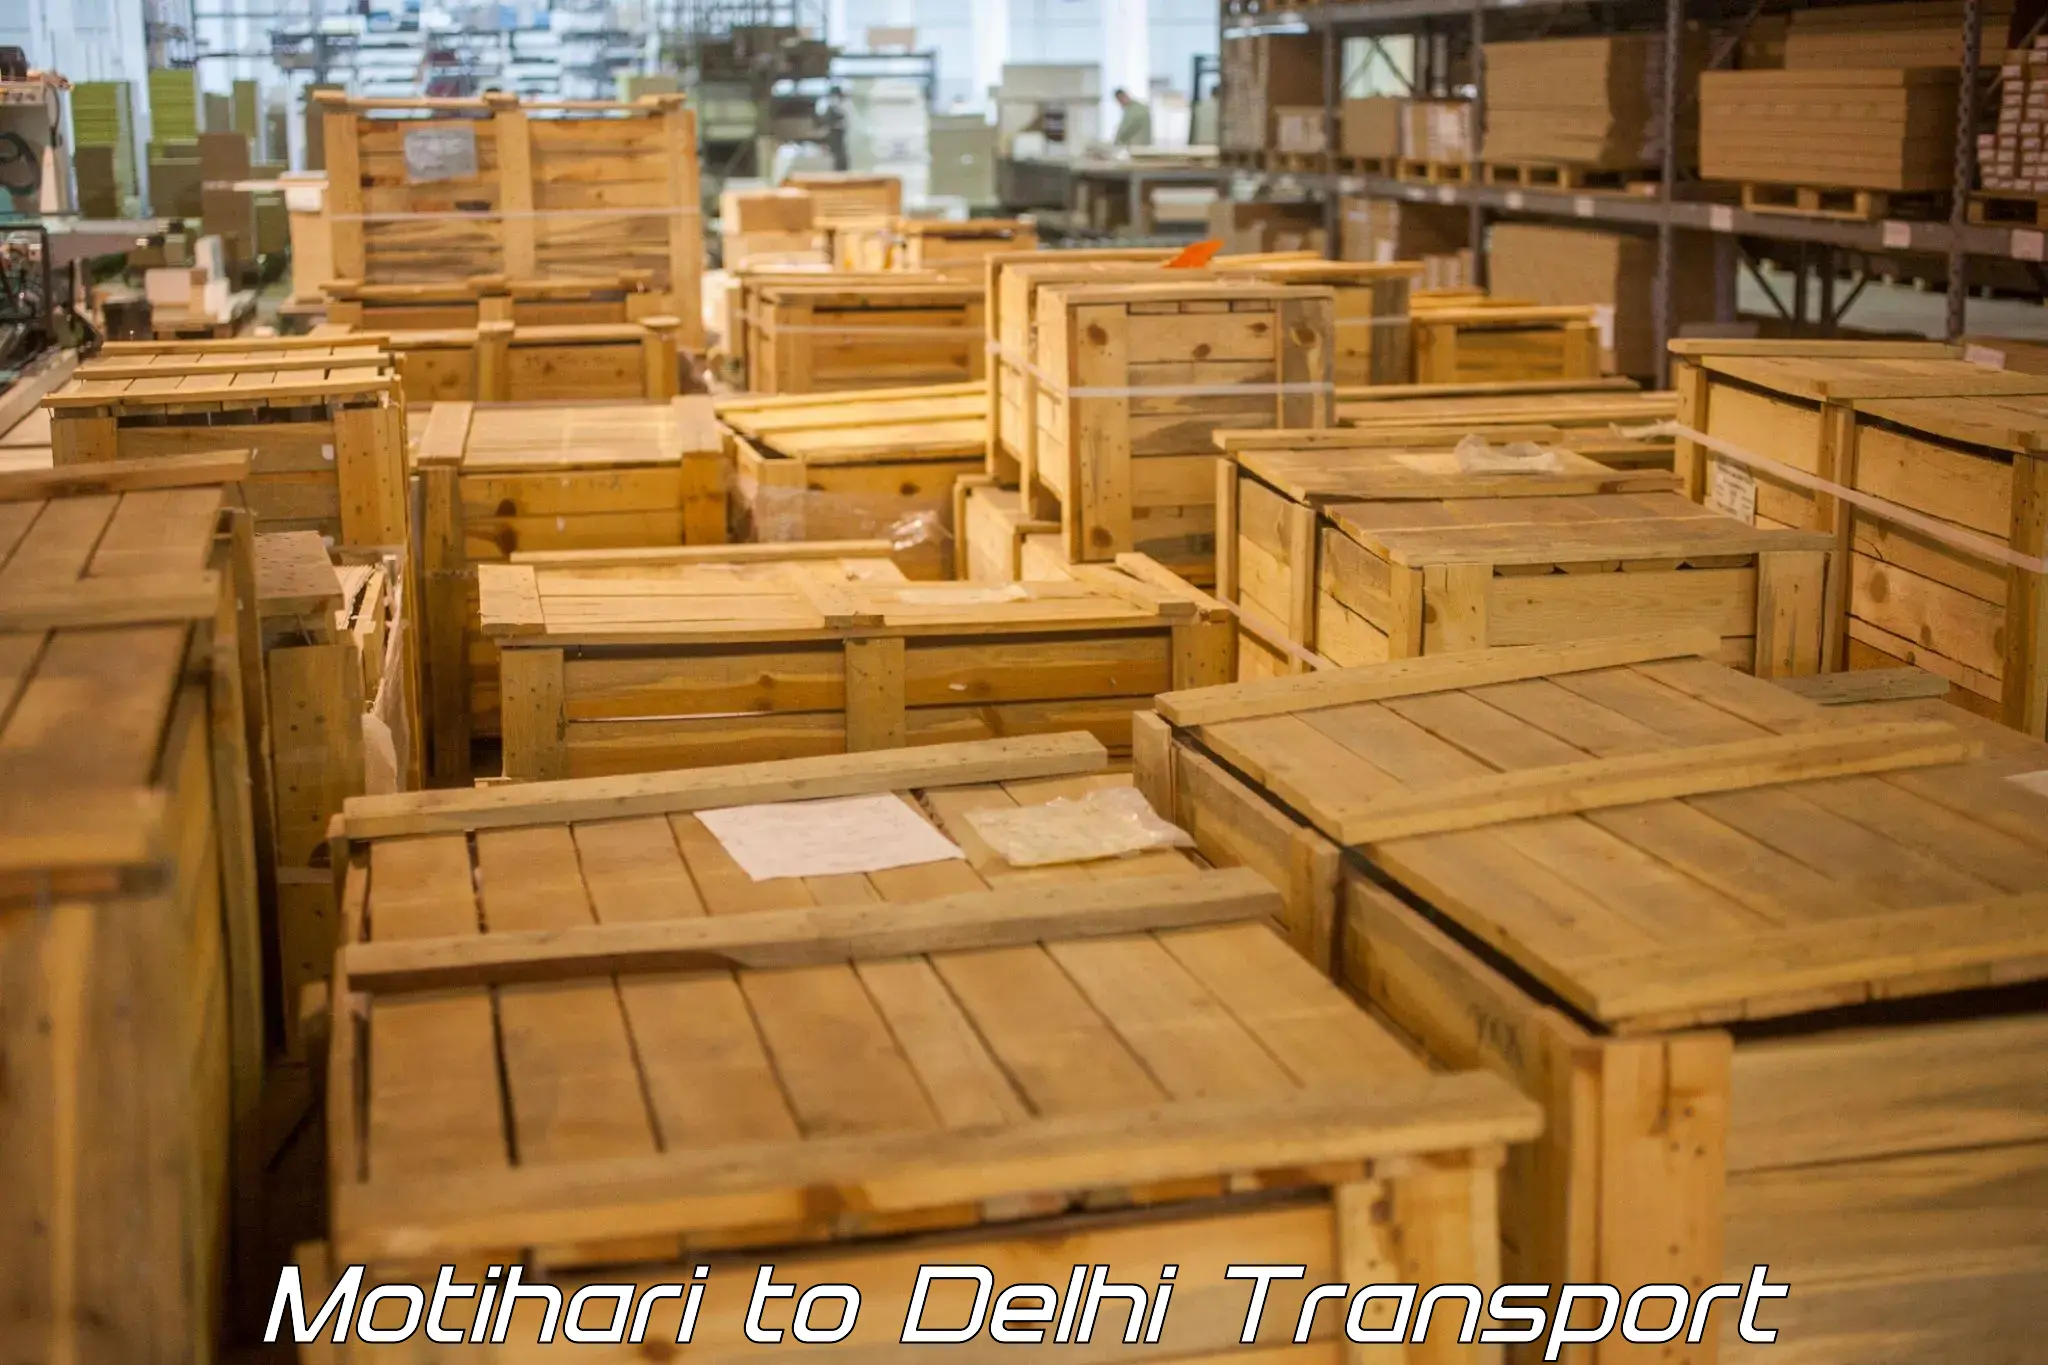 Daily transport service Motihari to Burari